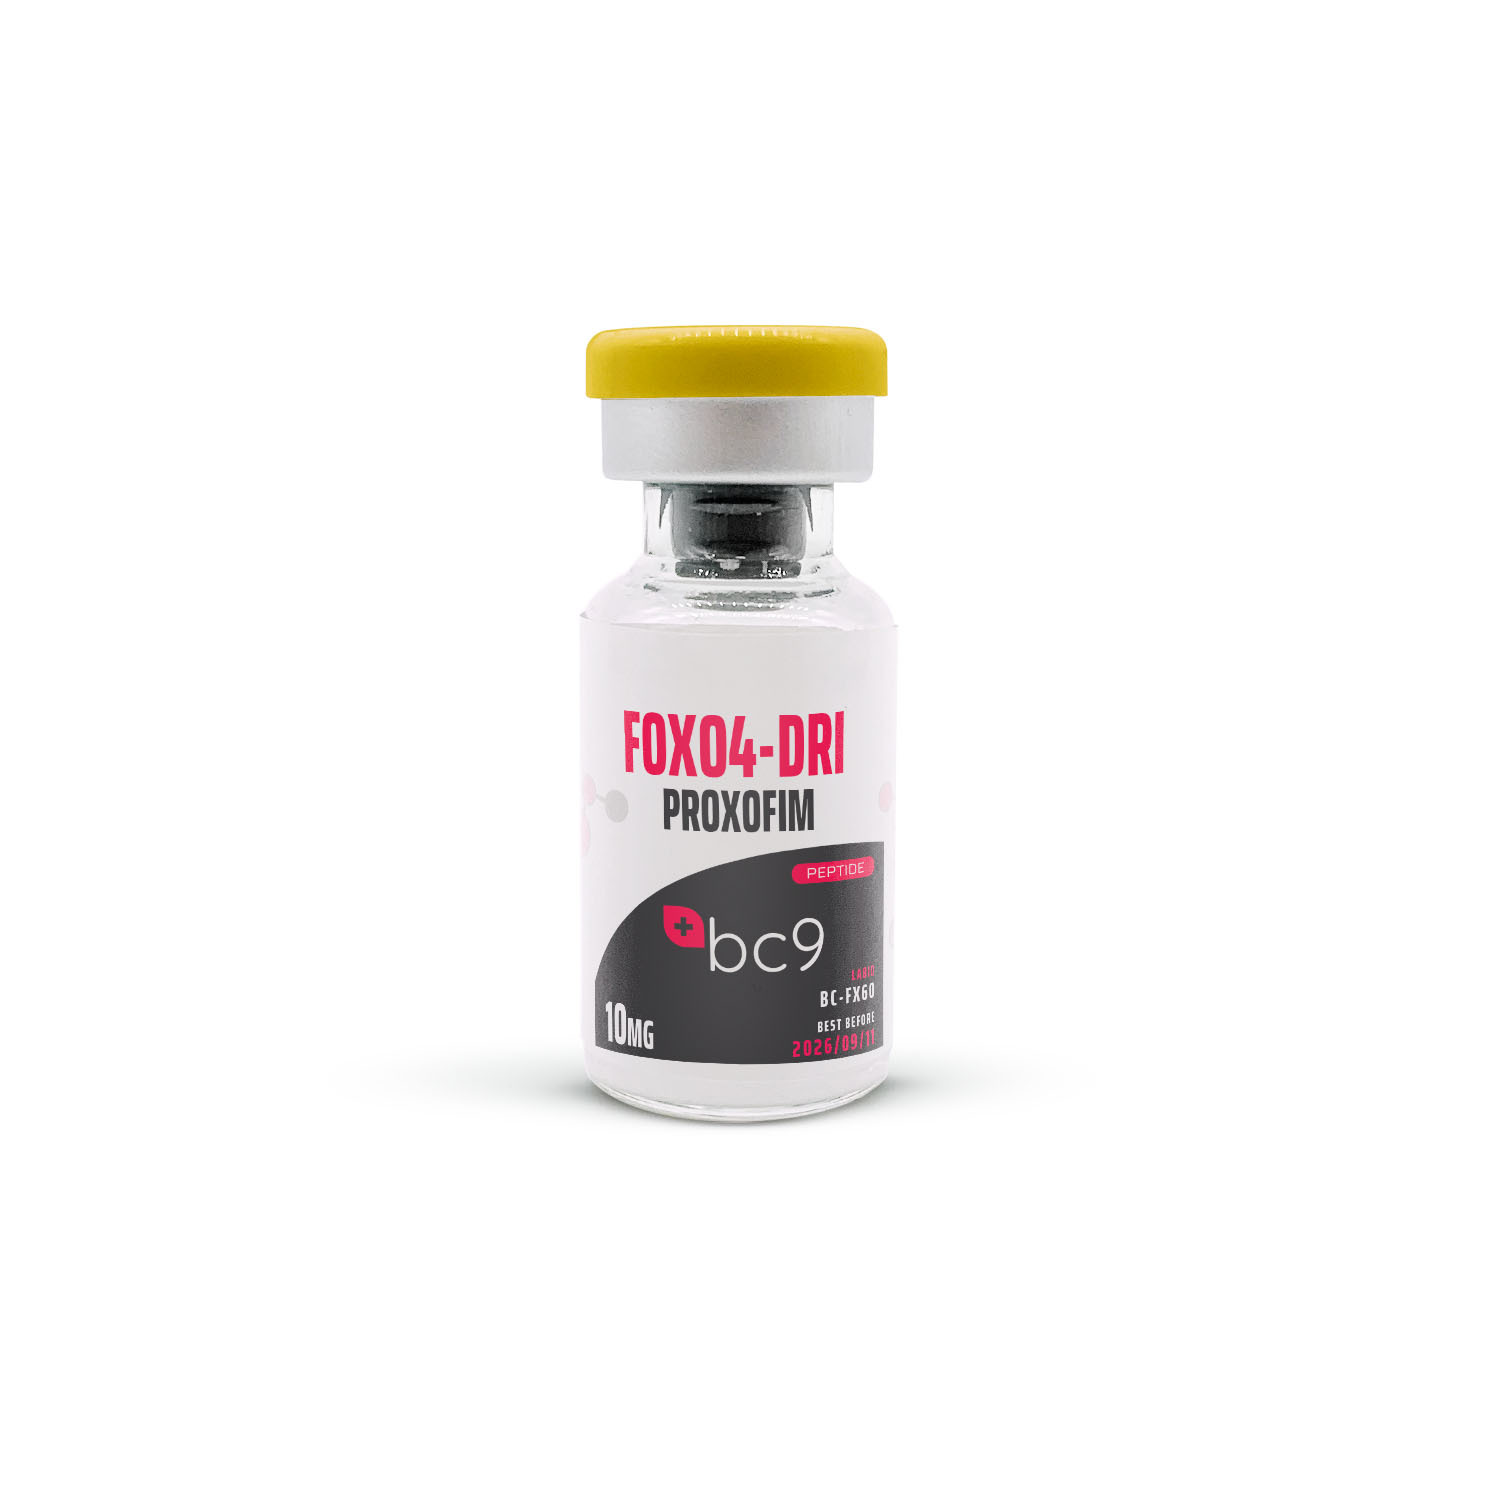 FOXO4-DRI (Proxofim) Peptide for Sale | BC9.org